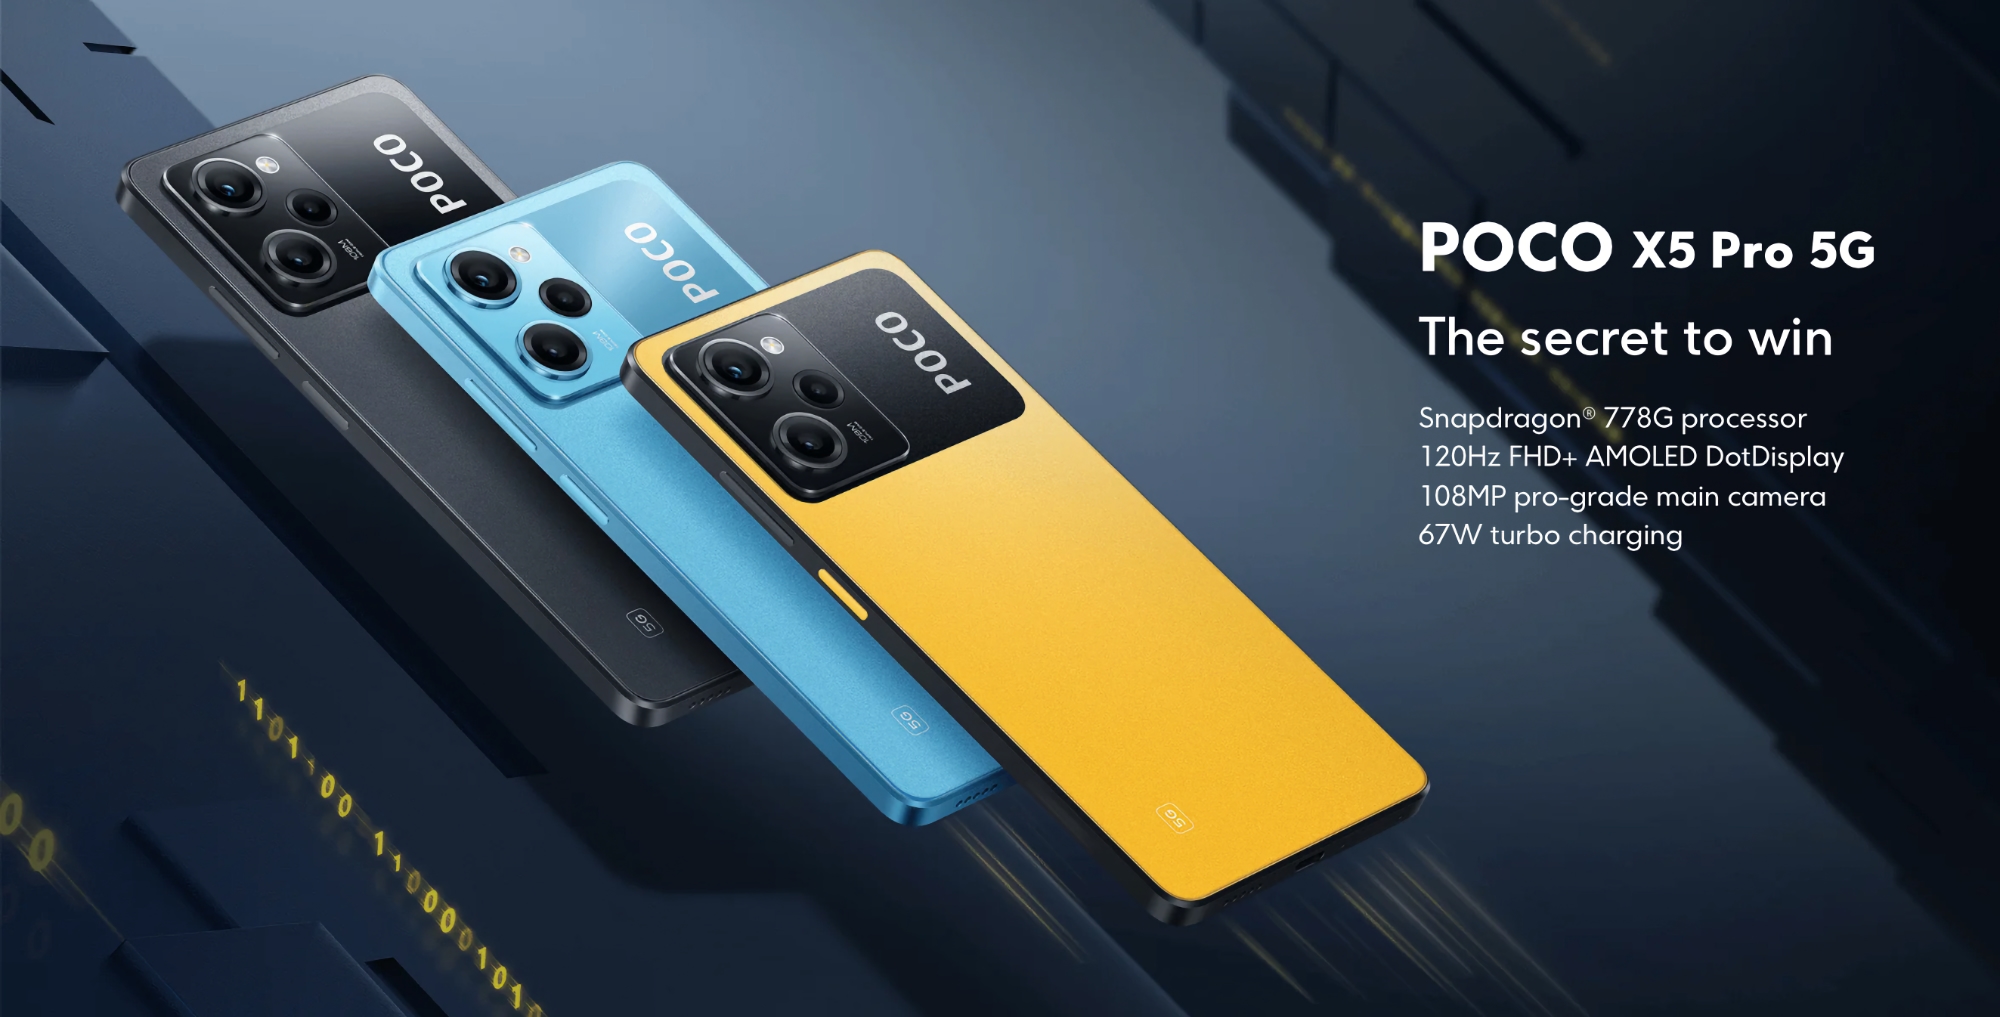 POCO X5 Pro: wyświetlacz AMOLED 120Hz, układ Snapdragon 778G, aparat 108 MP i bateria 5000 mAh z możliwością ładowania 67W.